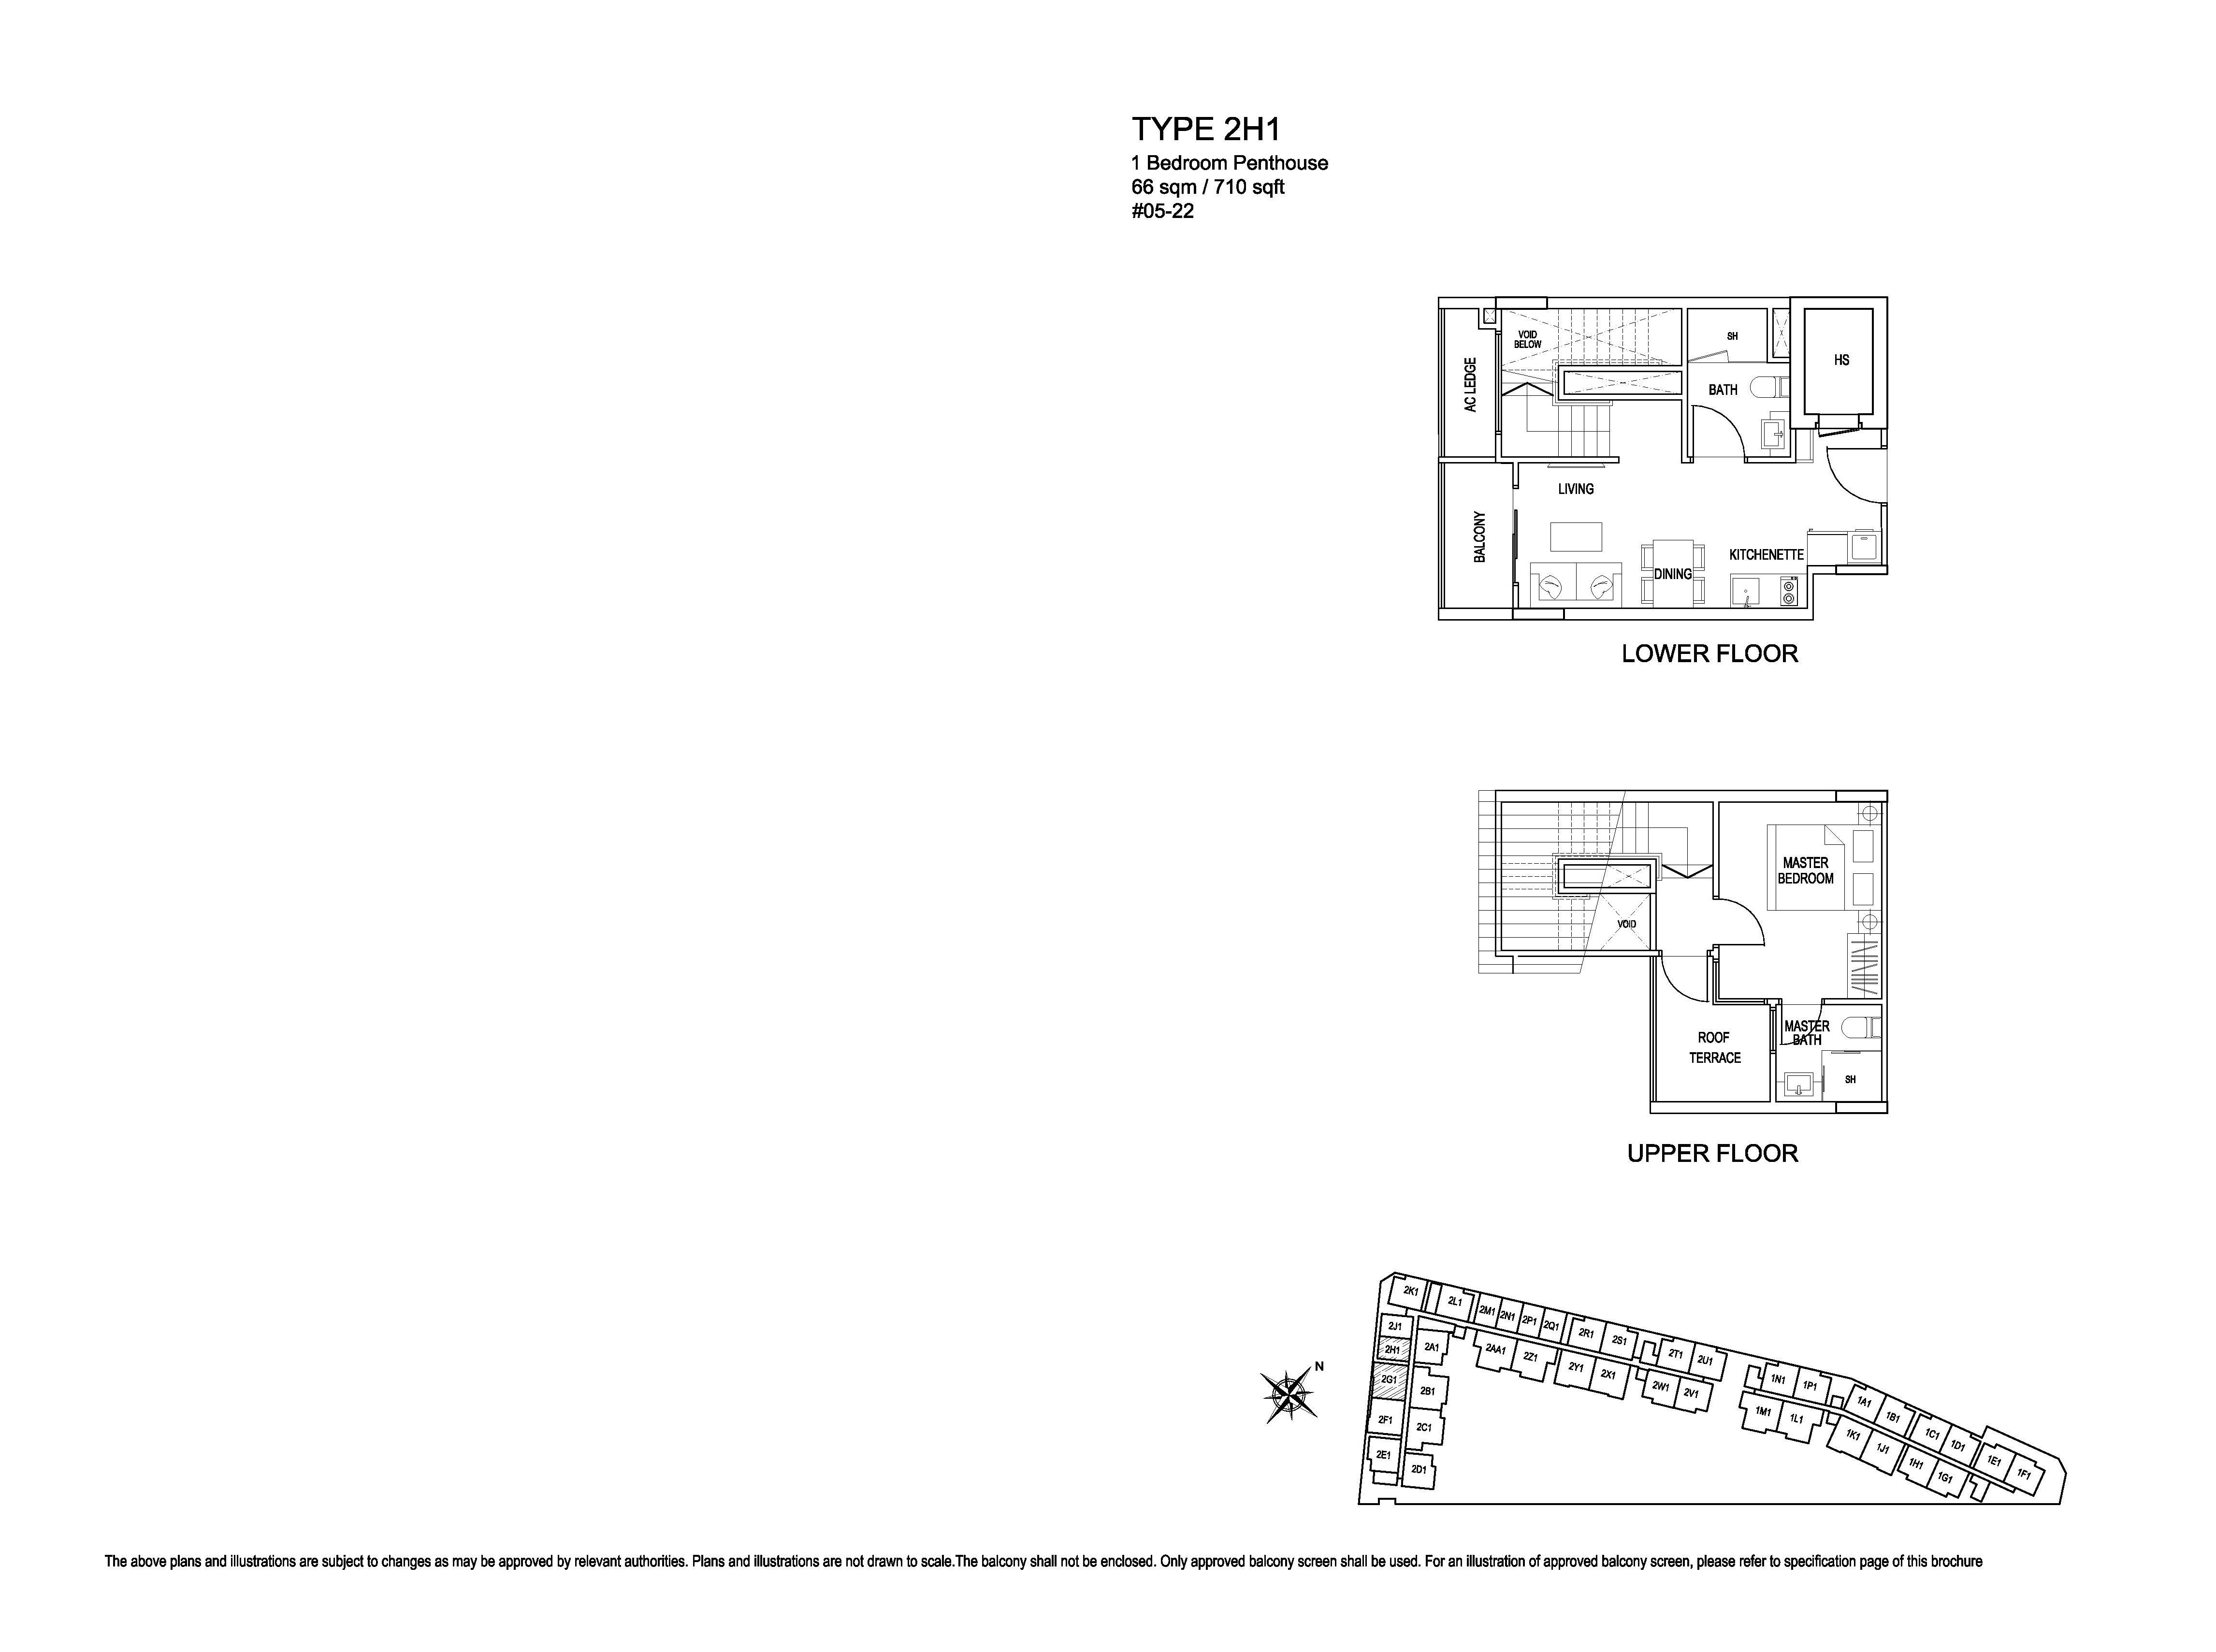 Kensington Square 1 Bedroom Penthouse Floor Plans Type 2H1